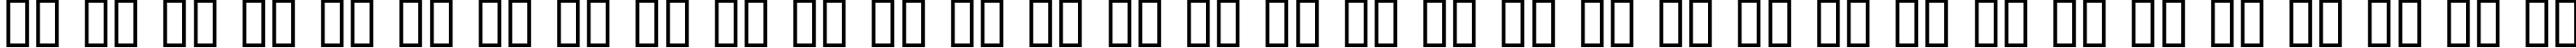 Пример написания русского алфавита шрифтом Datacut